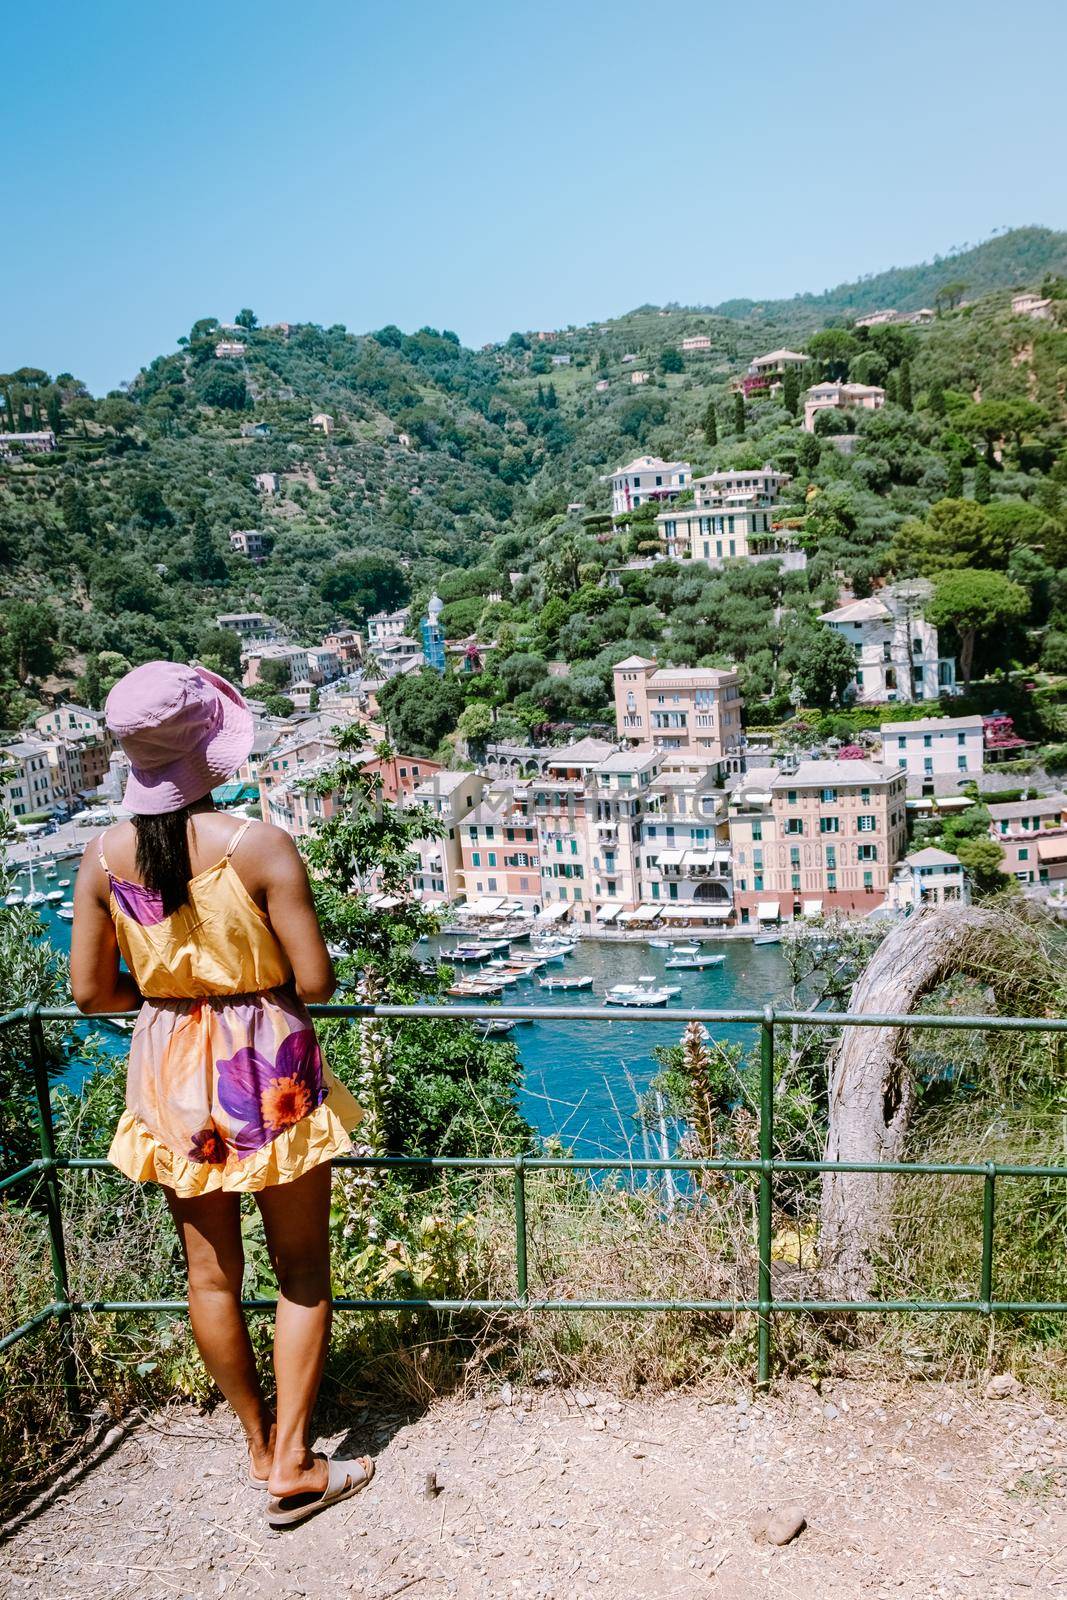 Portofino Italy June 2020, Portofino famous village bay, Italy Europe colorful village Ligurian coast